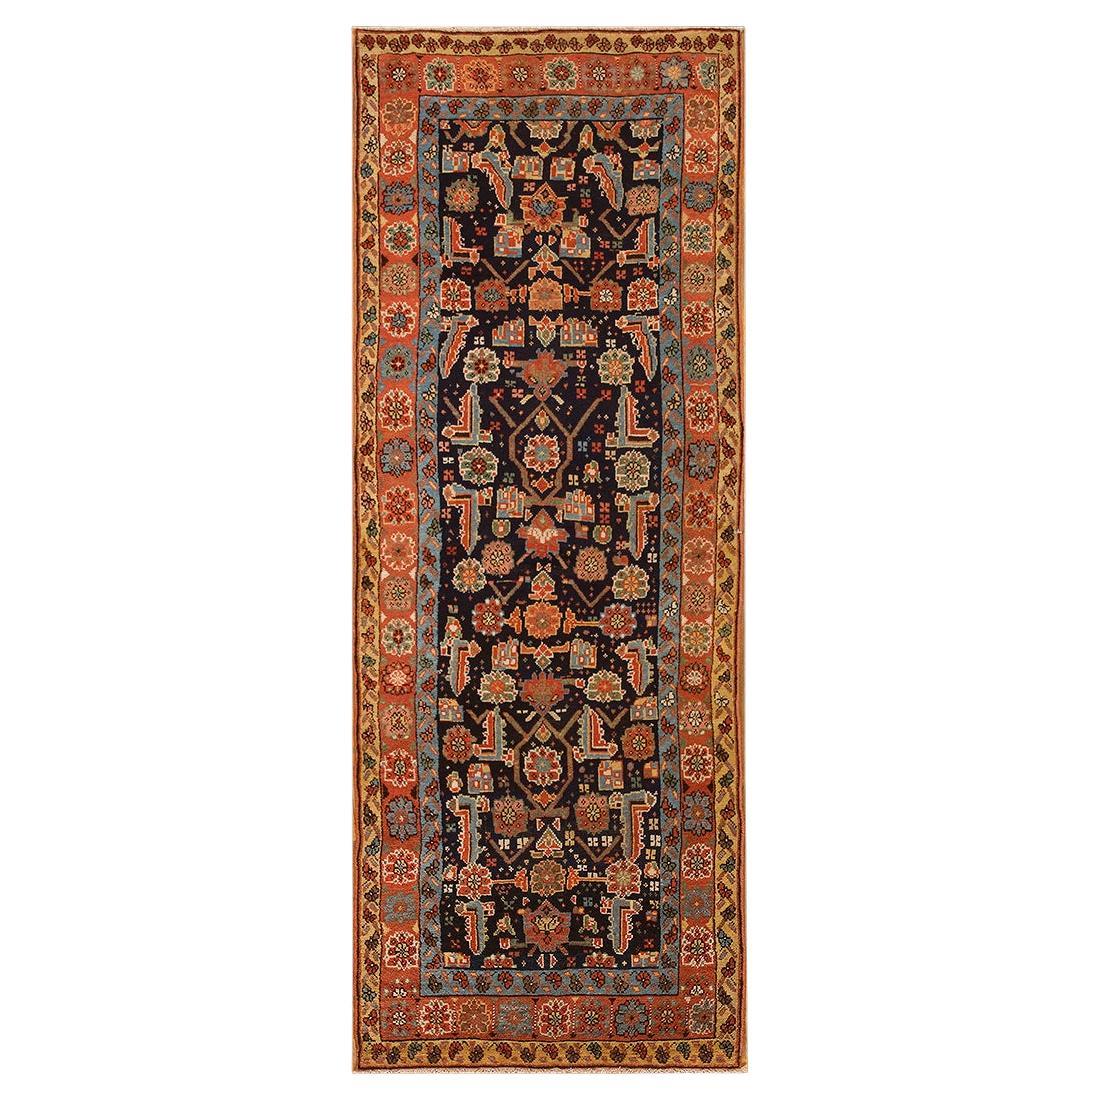 19. Jahrhundert N.W. Persischer Teppich ( 3'8" x 9' - 112 x 274)